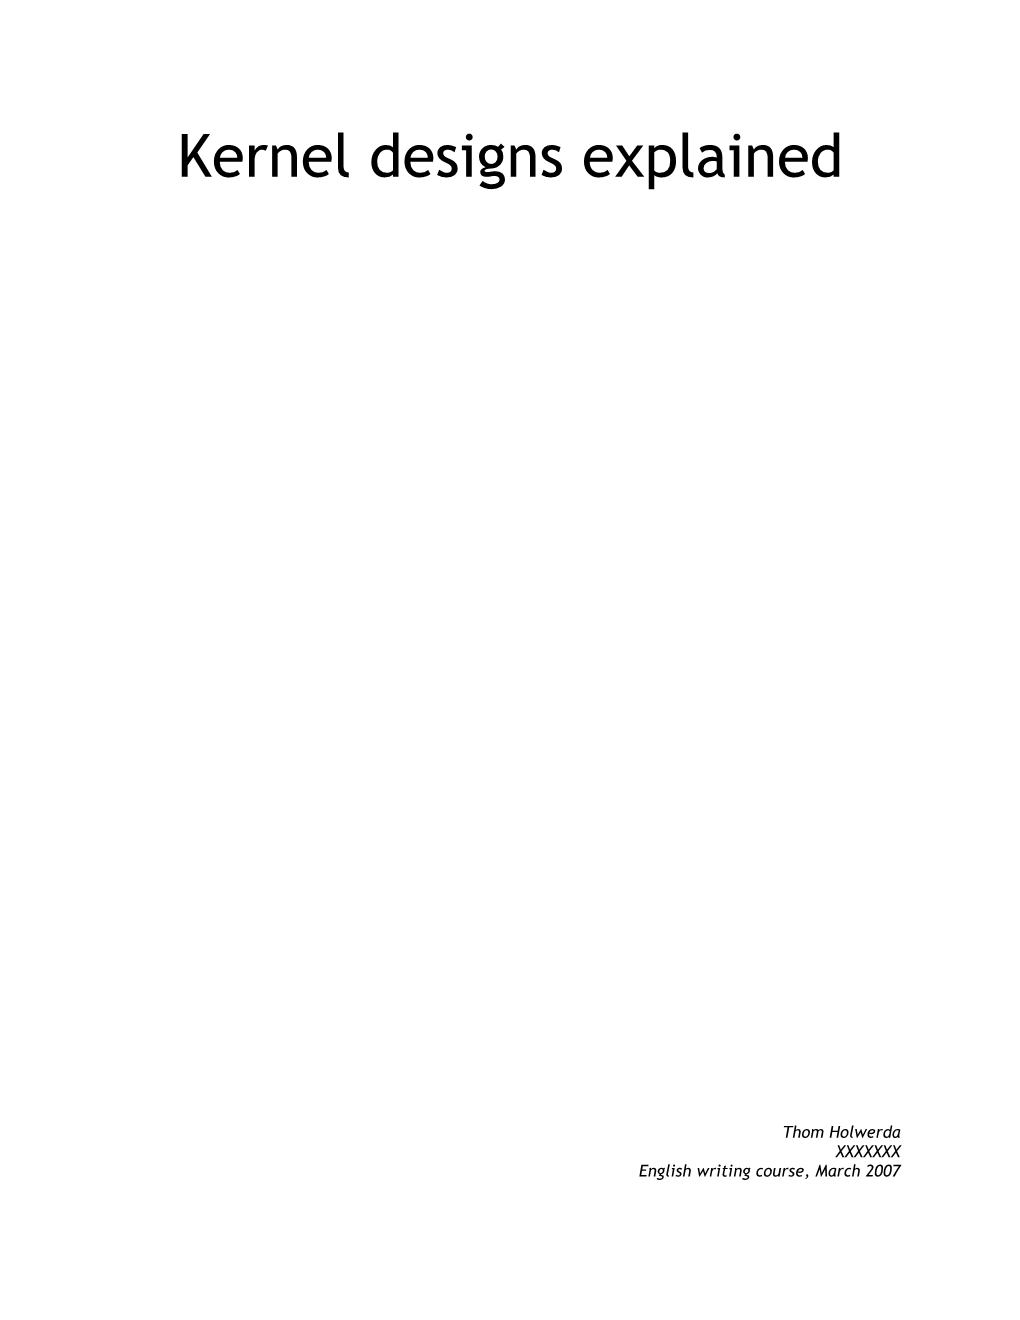 Kernel Designs Explained